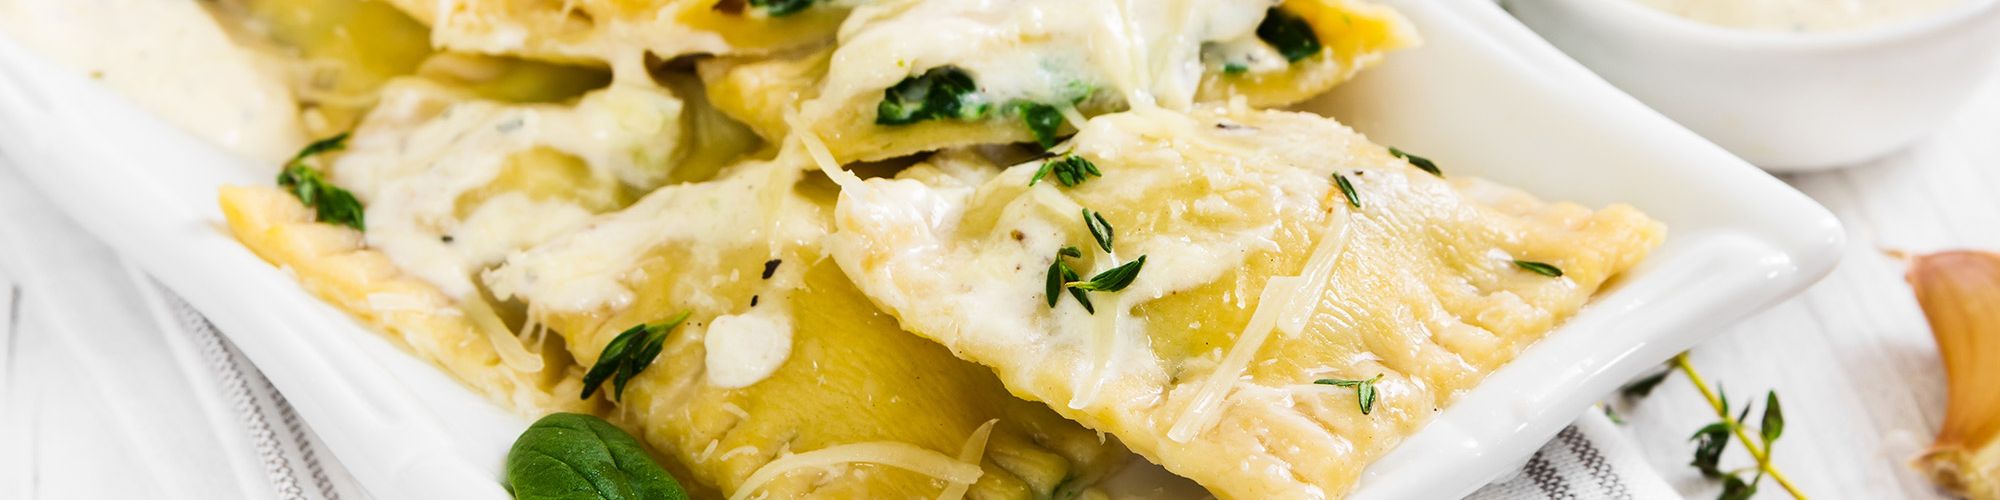 ricetta Ravioloni ricotta e spinaci alla crema di parmigiano con pasta fresca